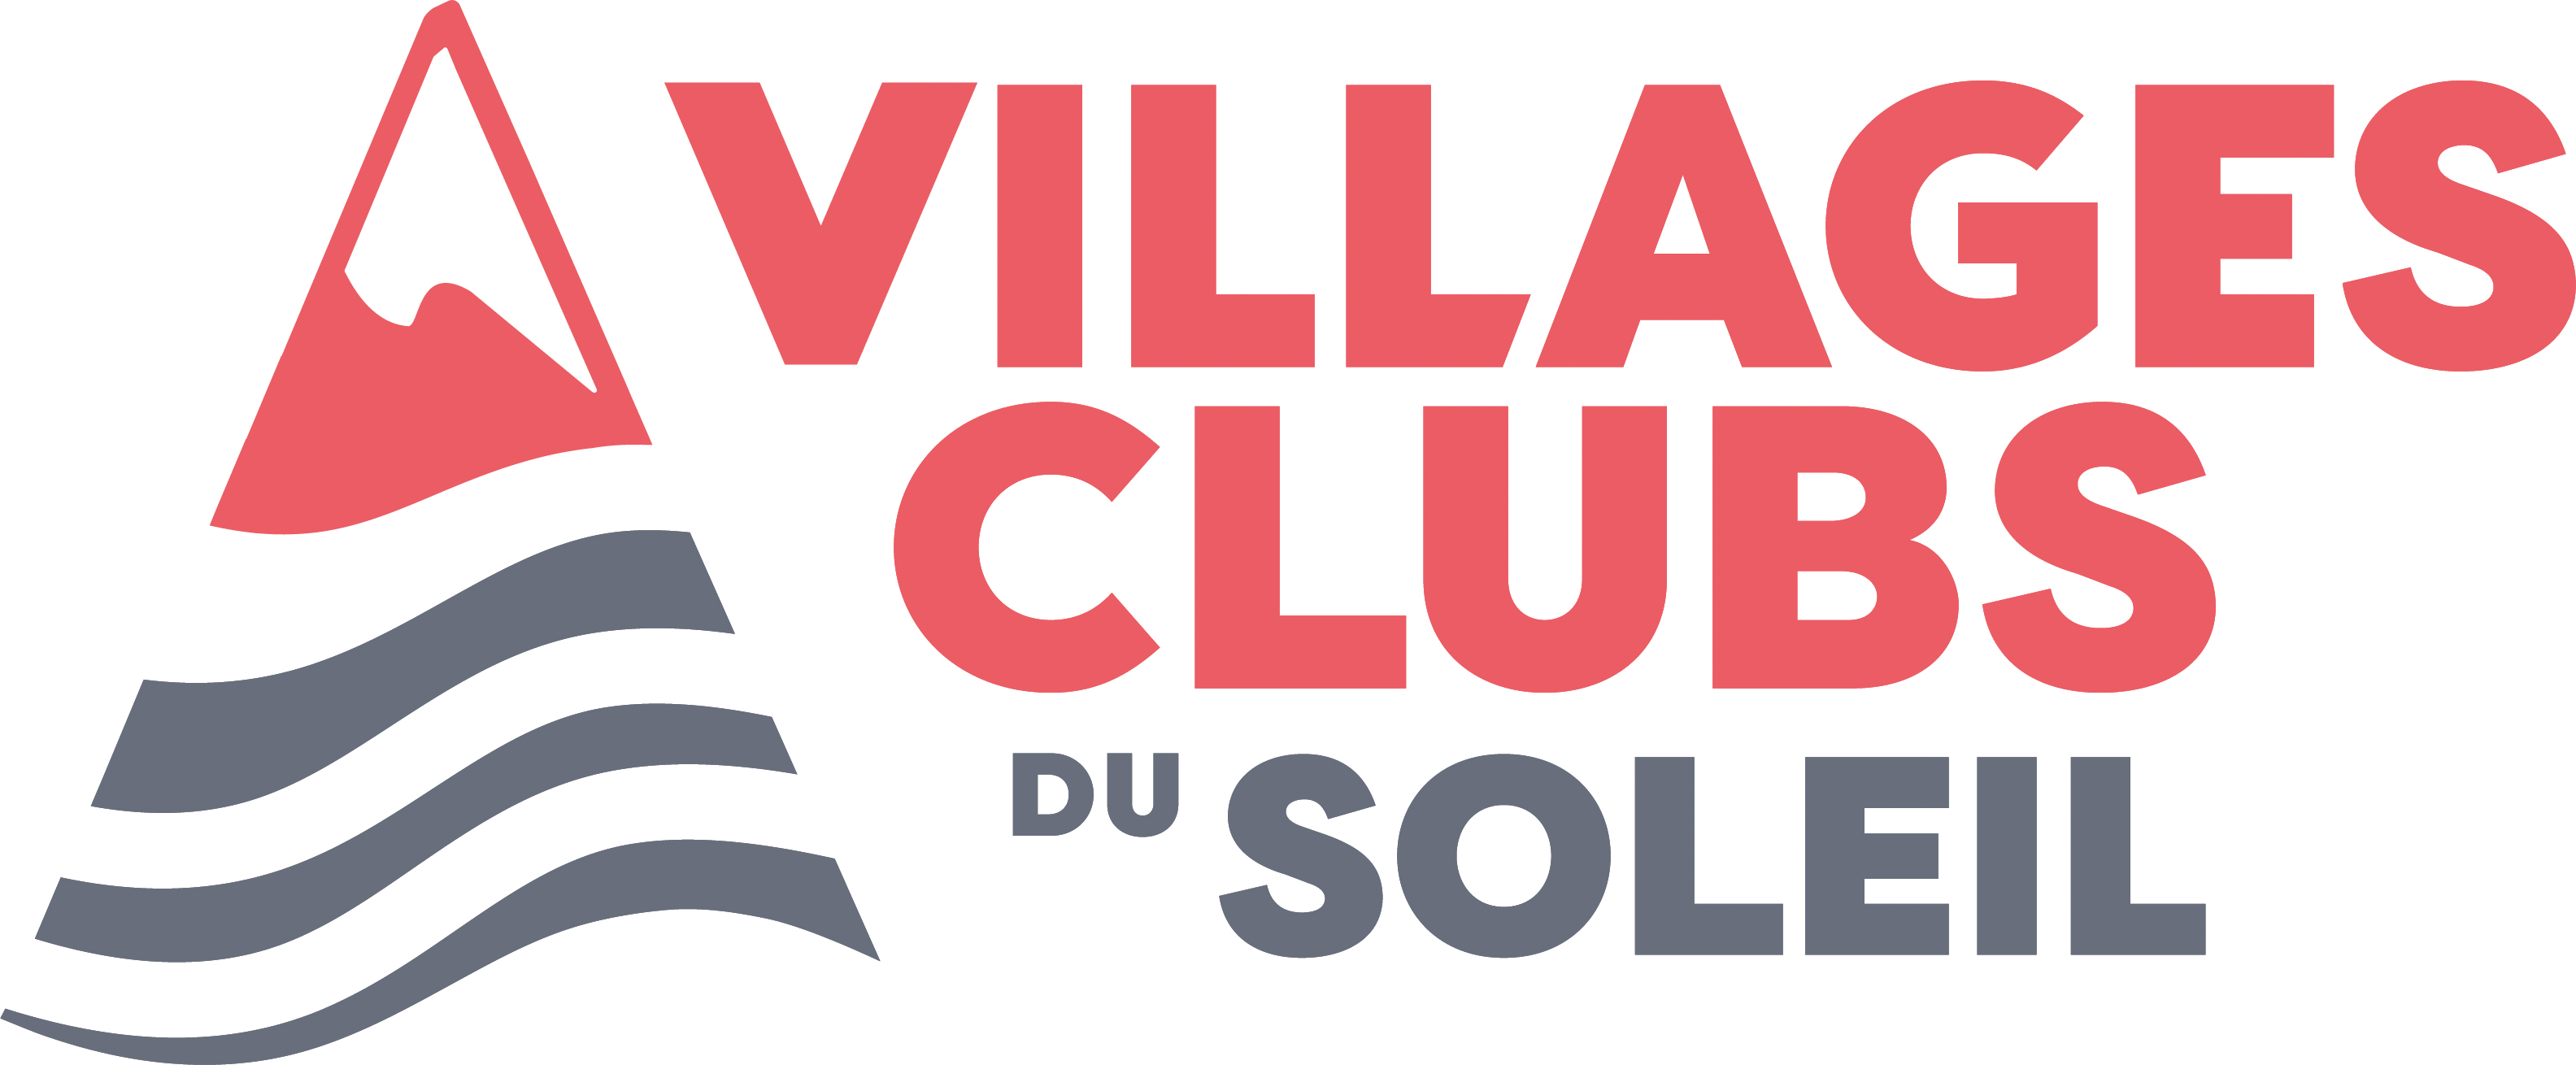 Les Villages Clubs du Soleil - Villages vacances, Résidences - France et Etranger